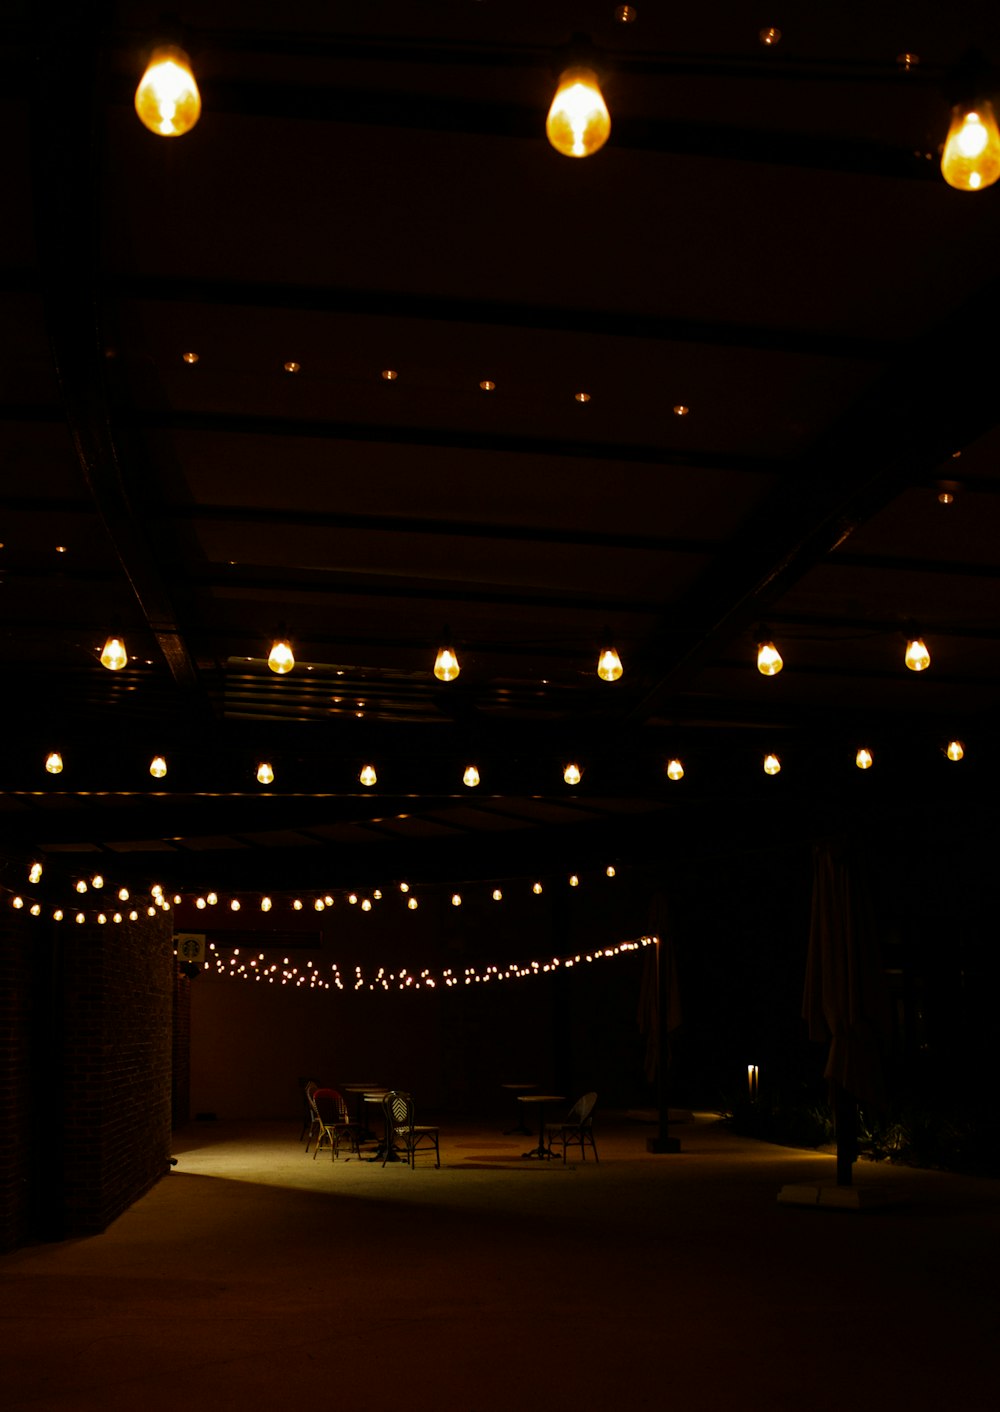 Ein schwach beleuchteter Raum mit vielen Lichtern, die von der Decke hängen